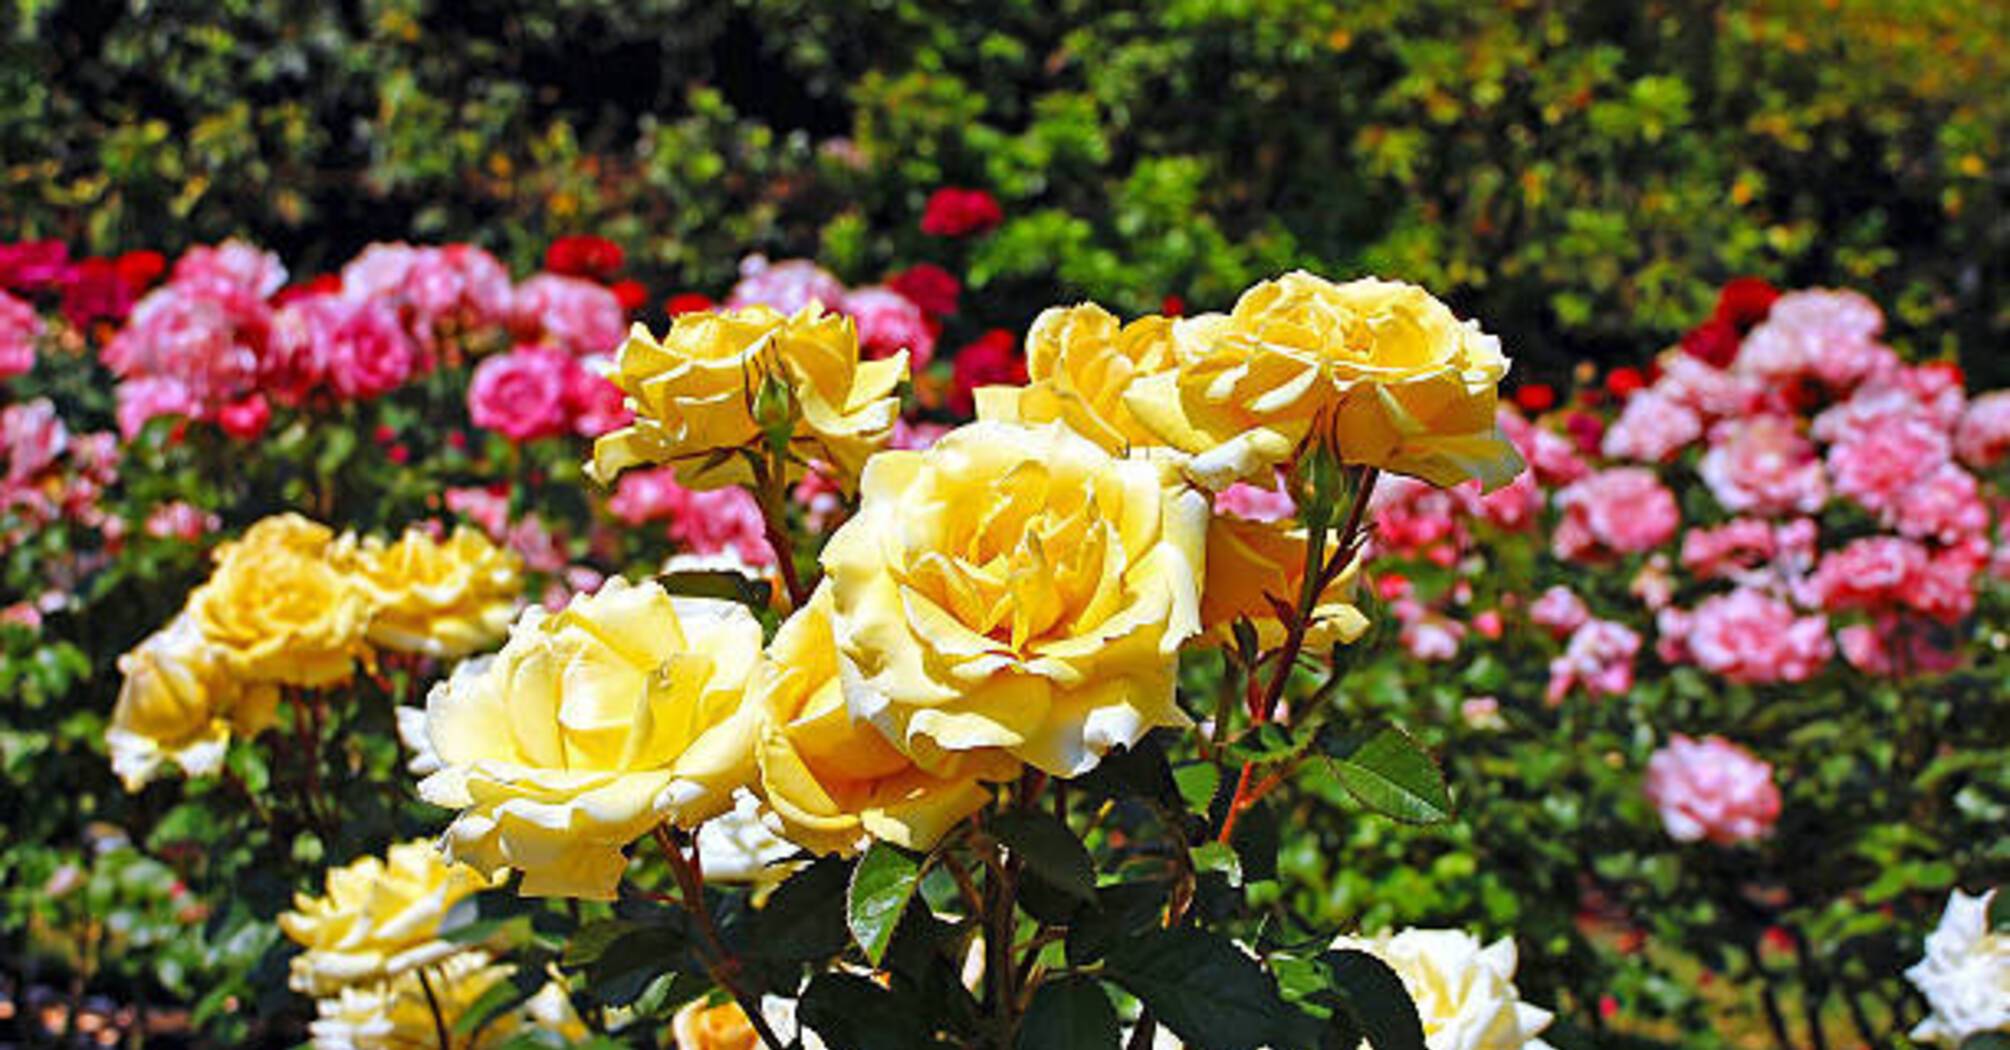 Які рослини найкраще посадити поруч із трояндами: корисні поради